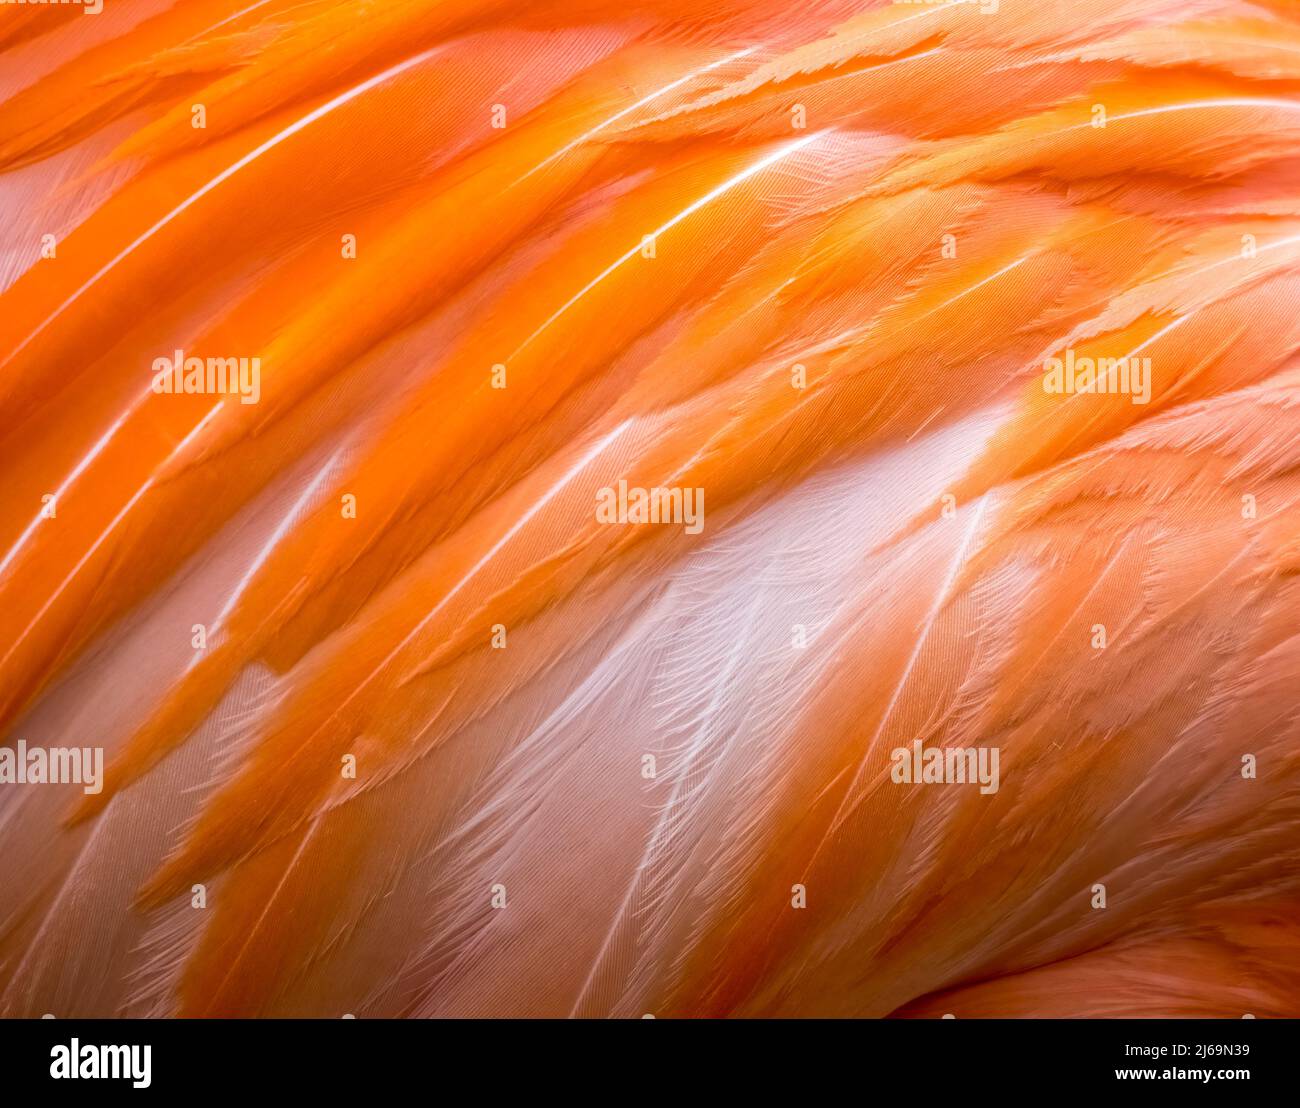 Close-up of Pink Flamigo bird feathers Stock Photo